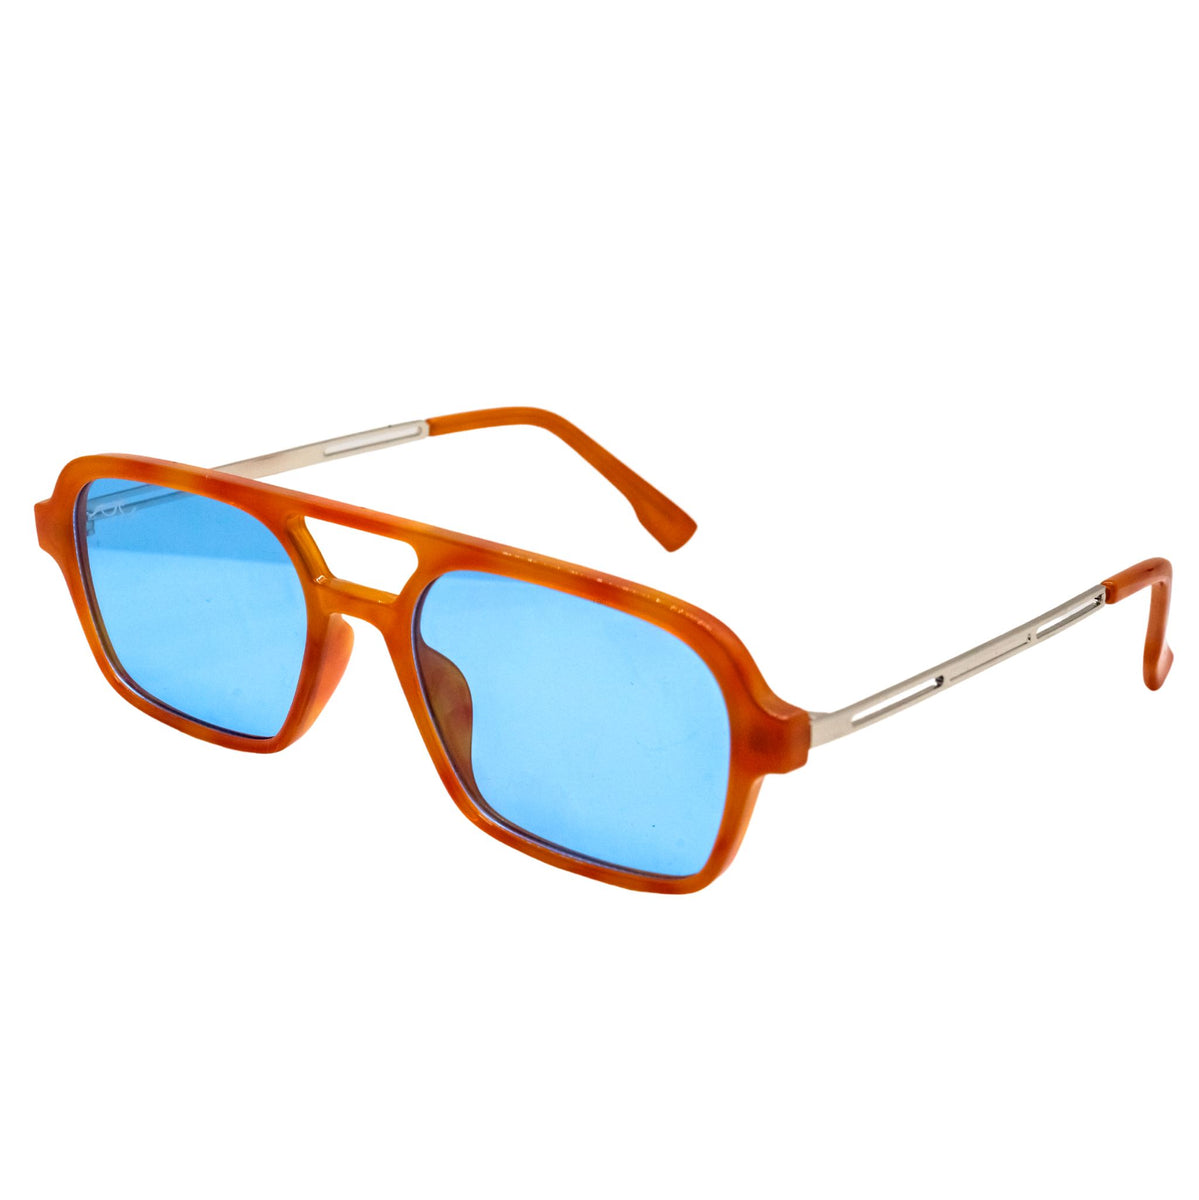 The Poppy | $35 | Orange Frame u0026 Blue Lens Sunglasses – Shop Wavey